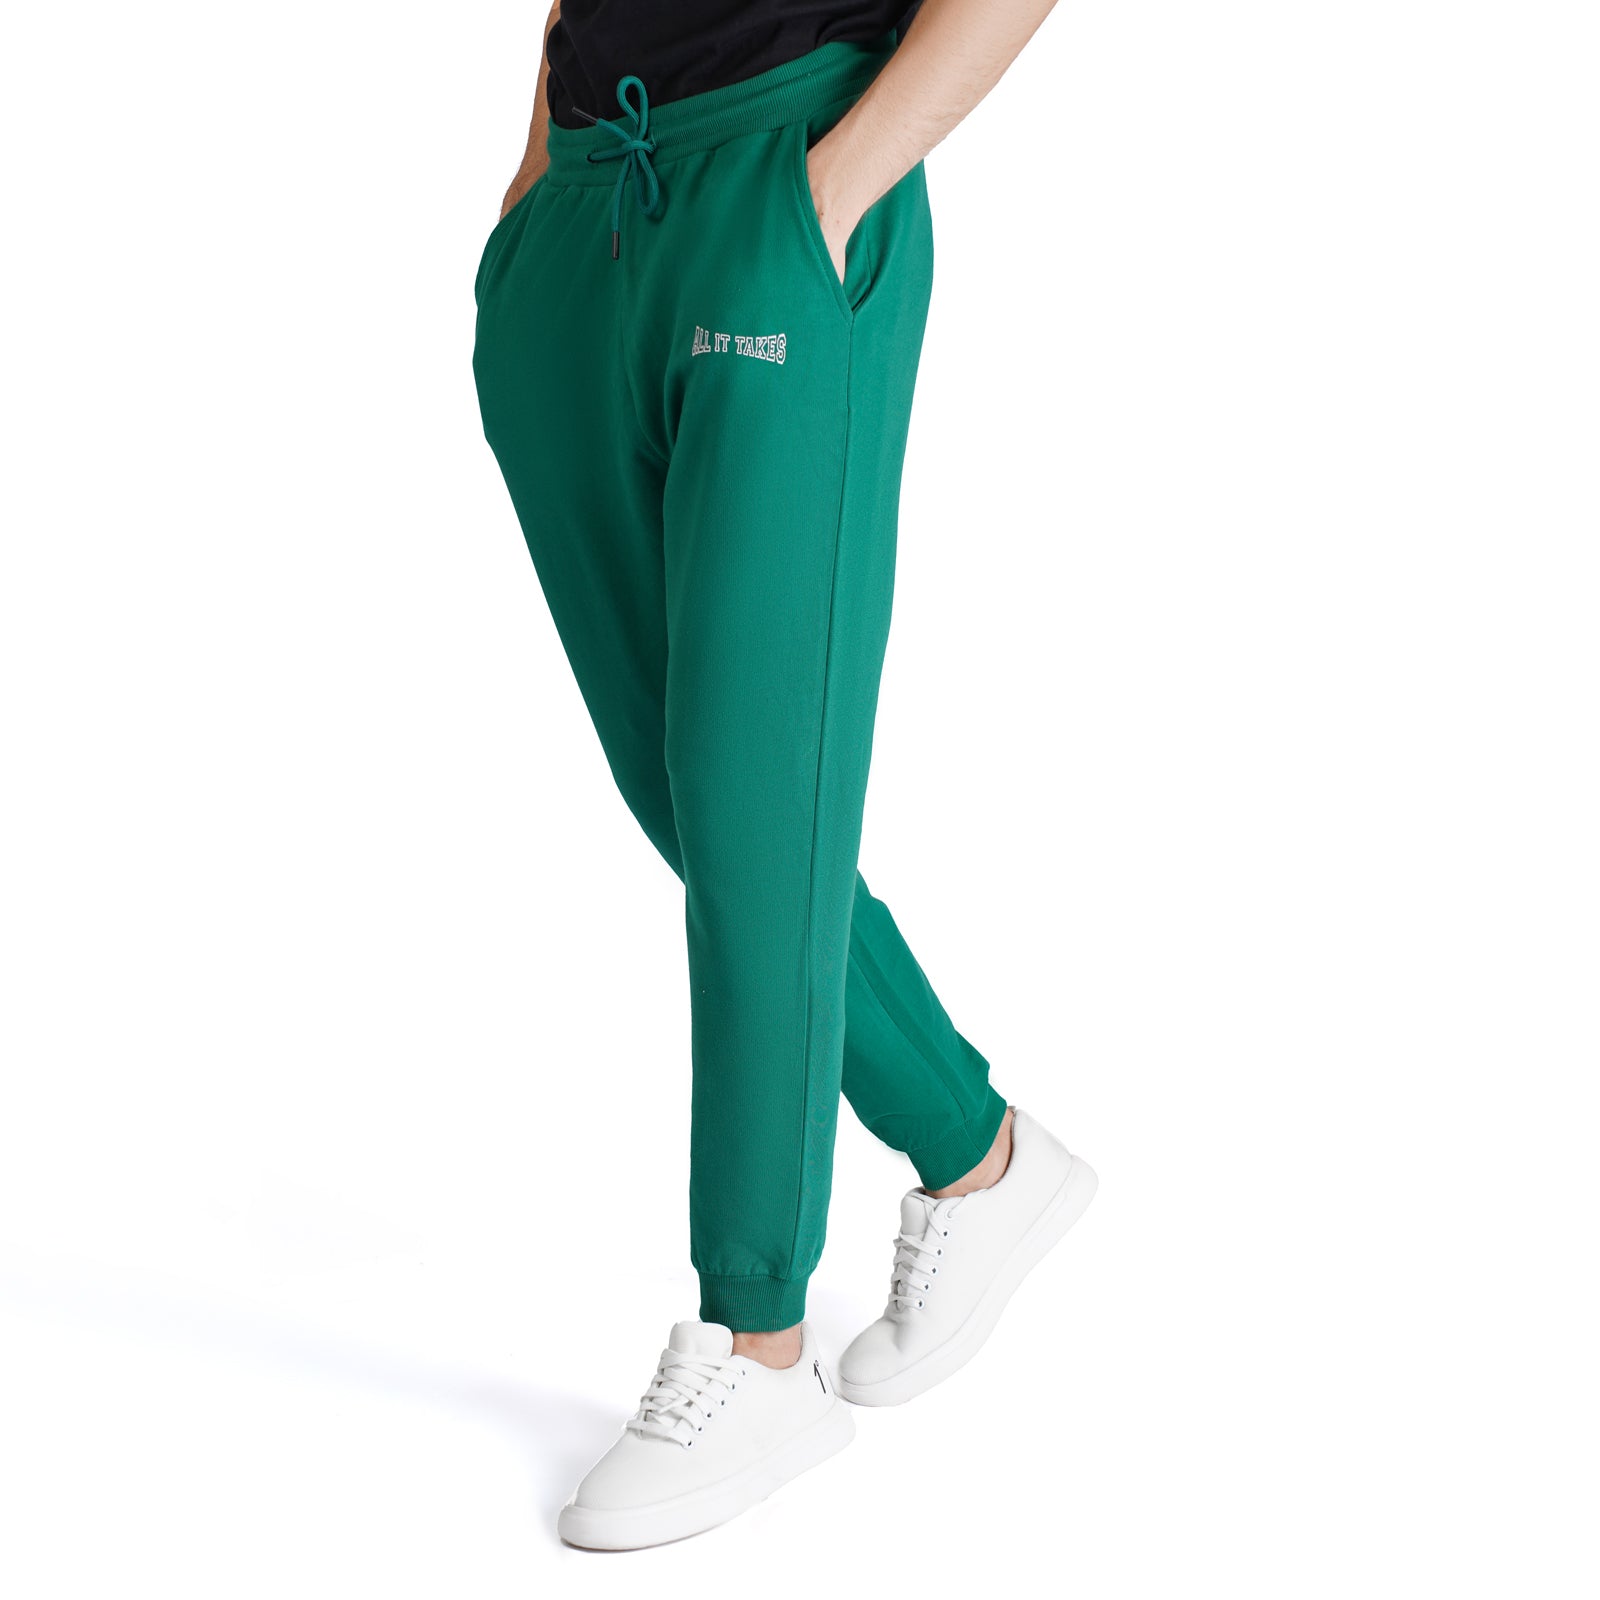 Verdant Green Graphic Jogger Trouser - OSSM7230004